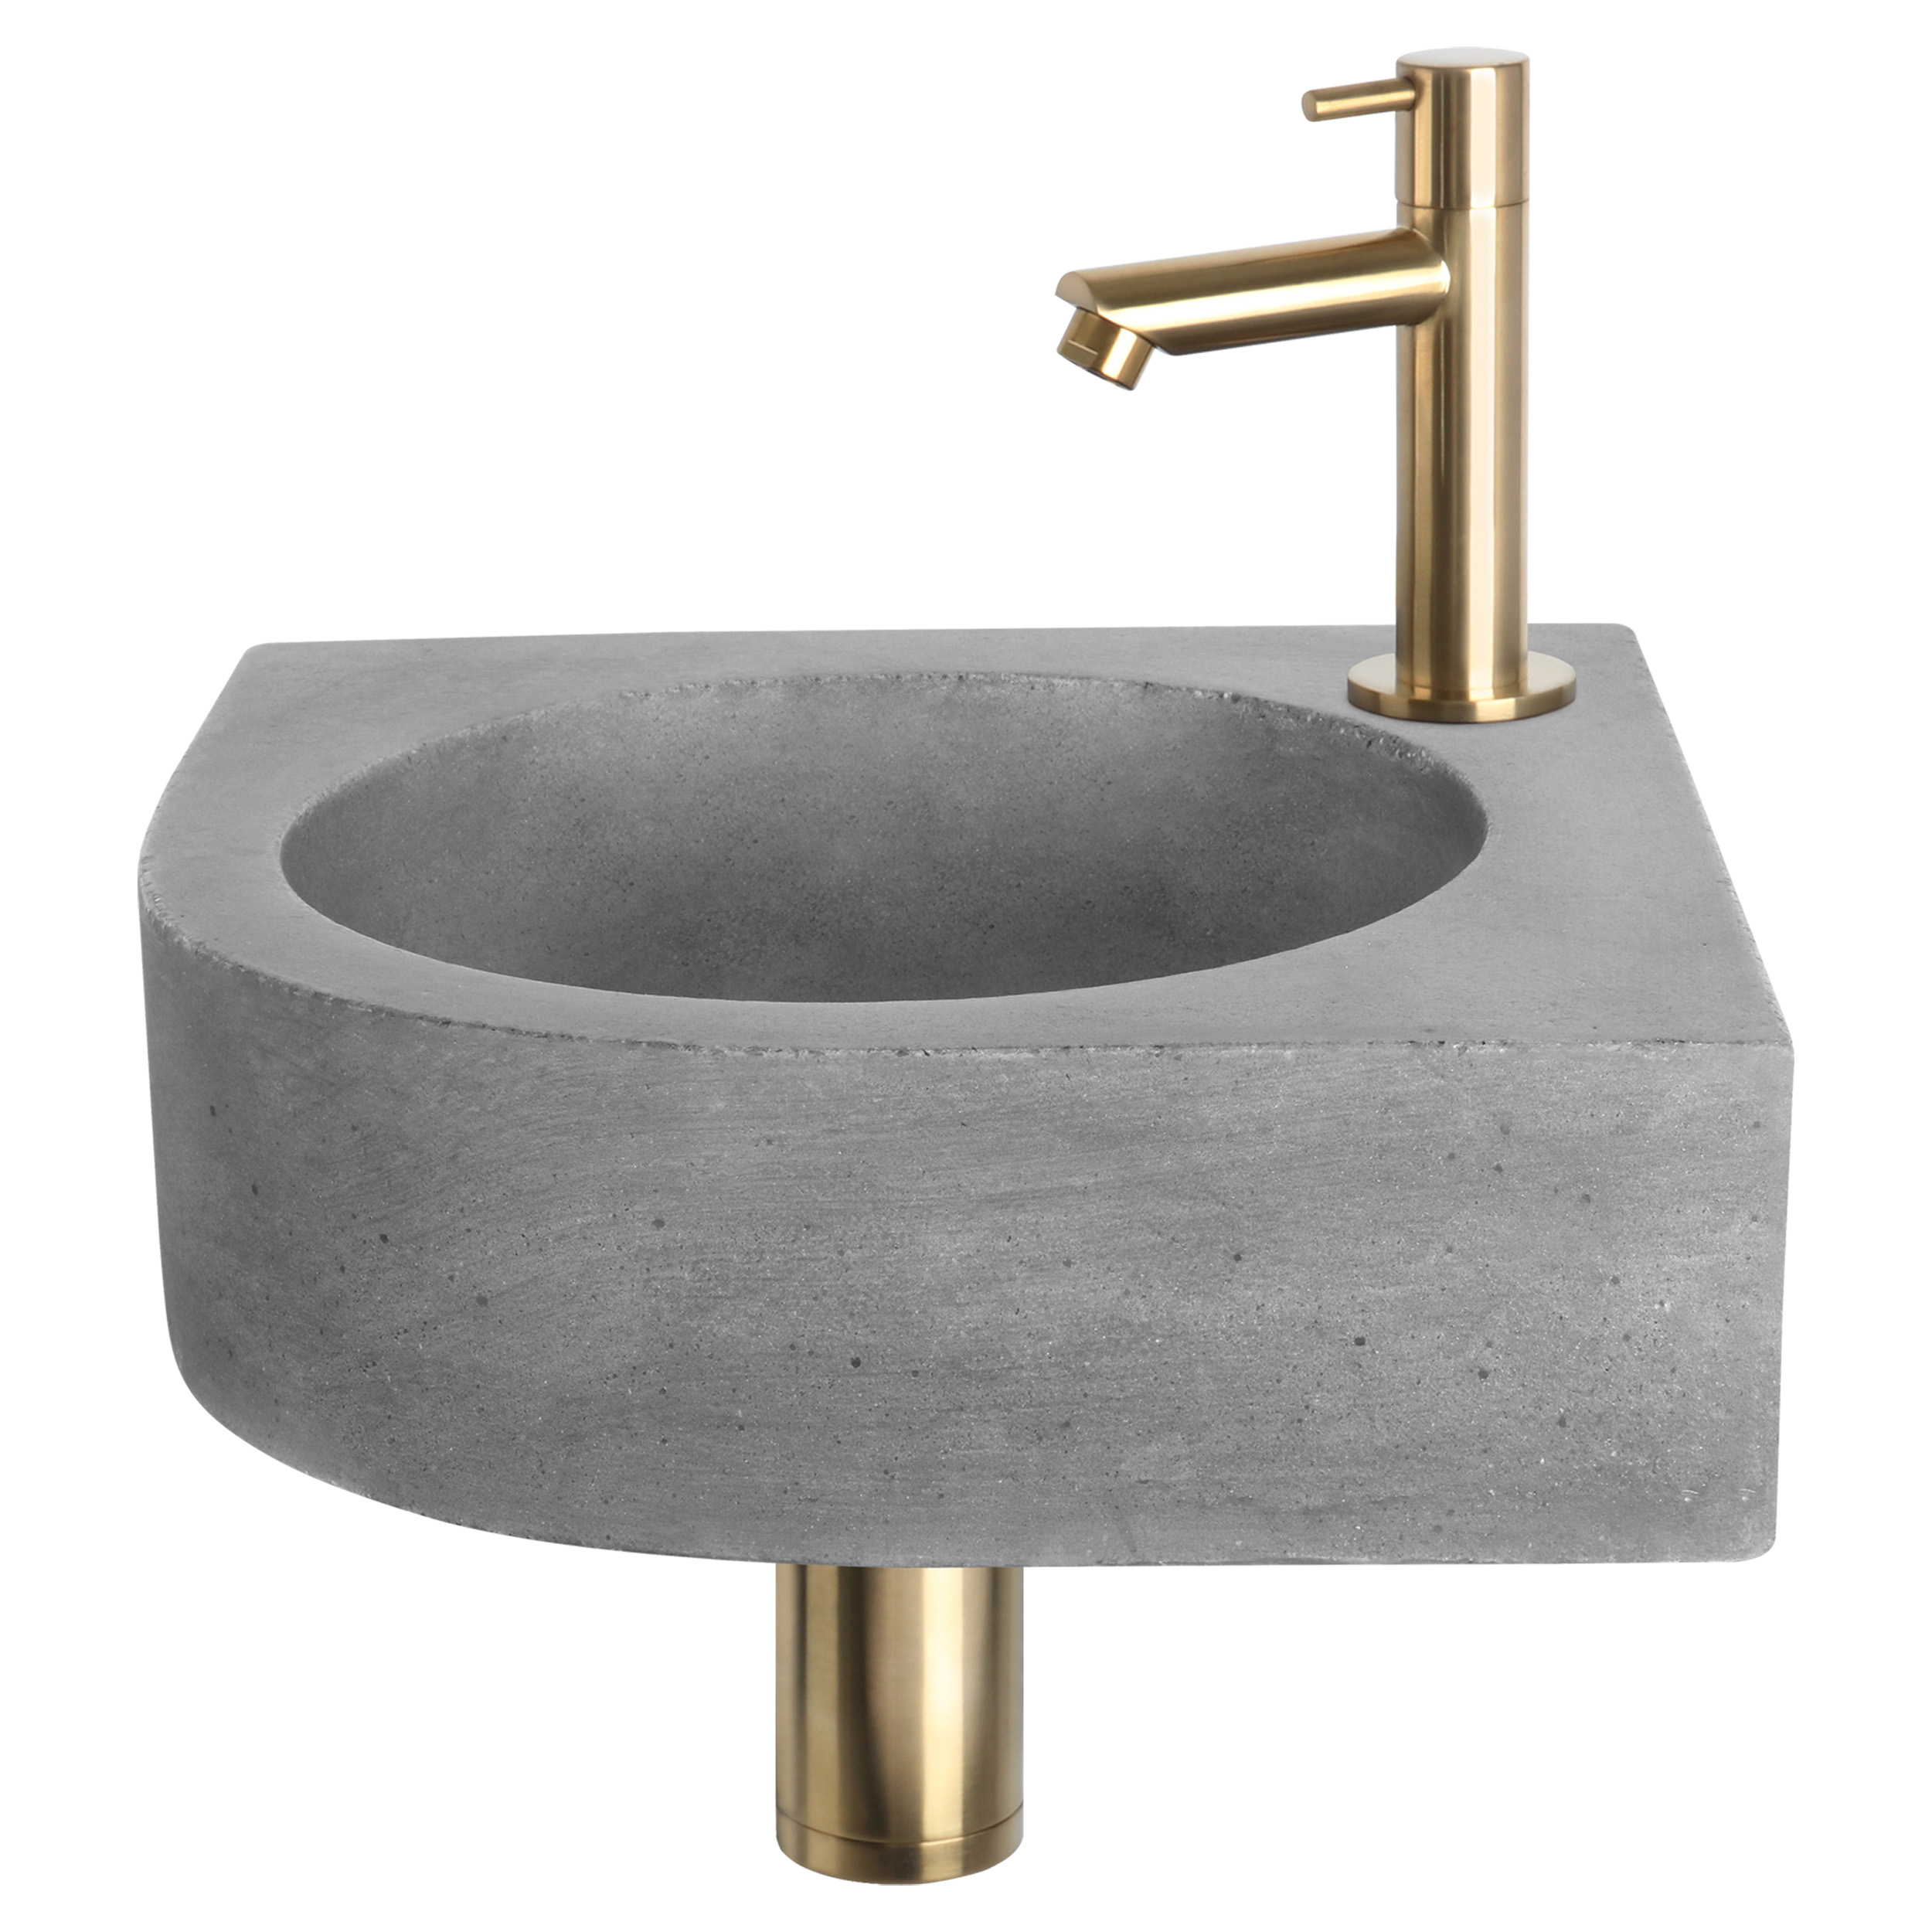 38.401.31 Differnz Cleo fonteinset beton donkergrijs - kraan recht - 31.5 x 31.5 x 10 cm - mat goud